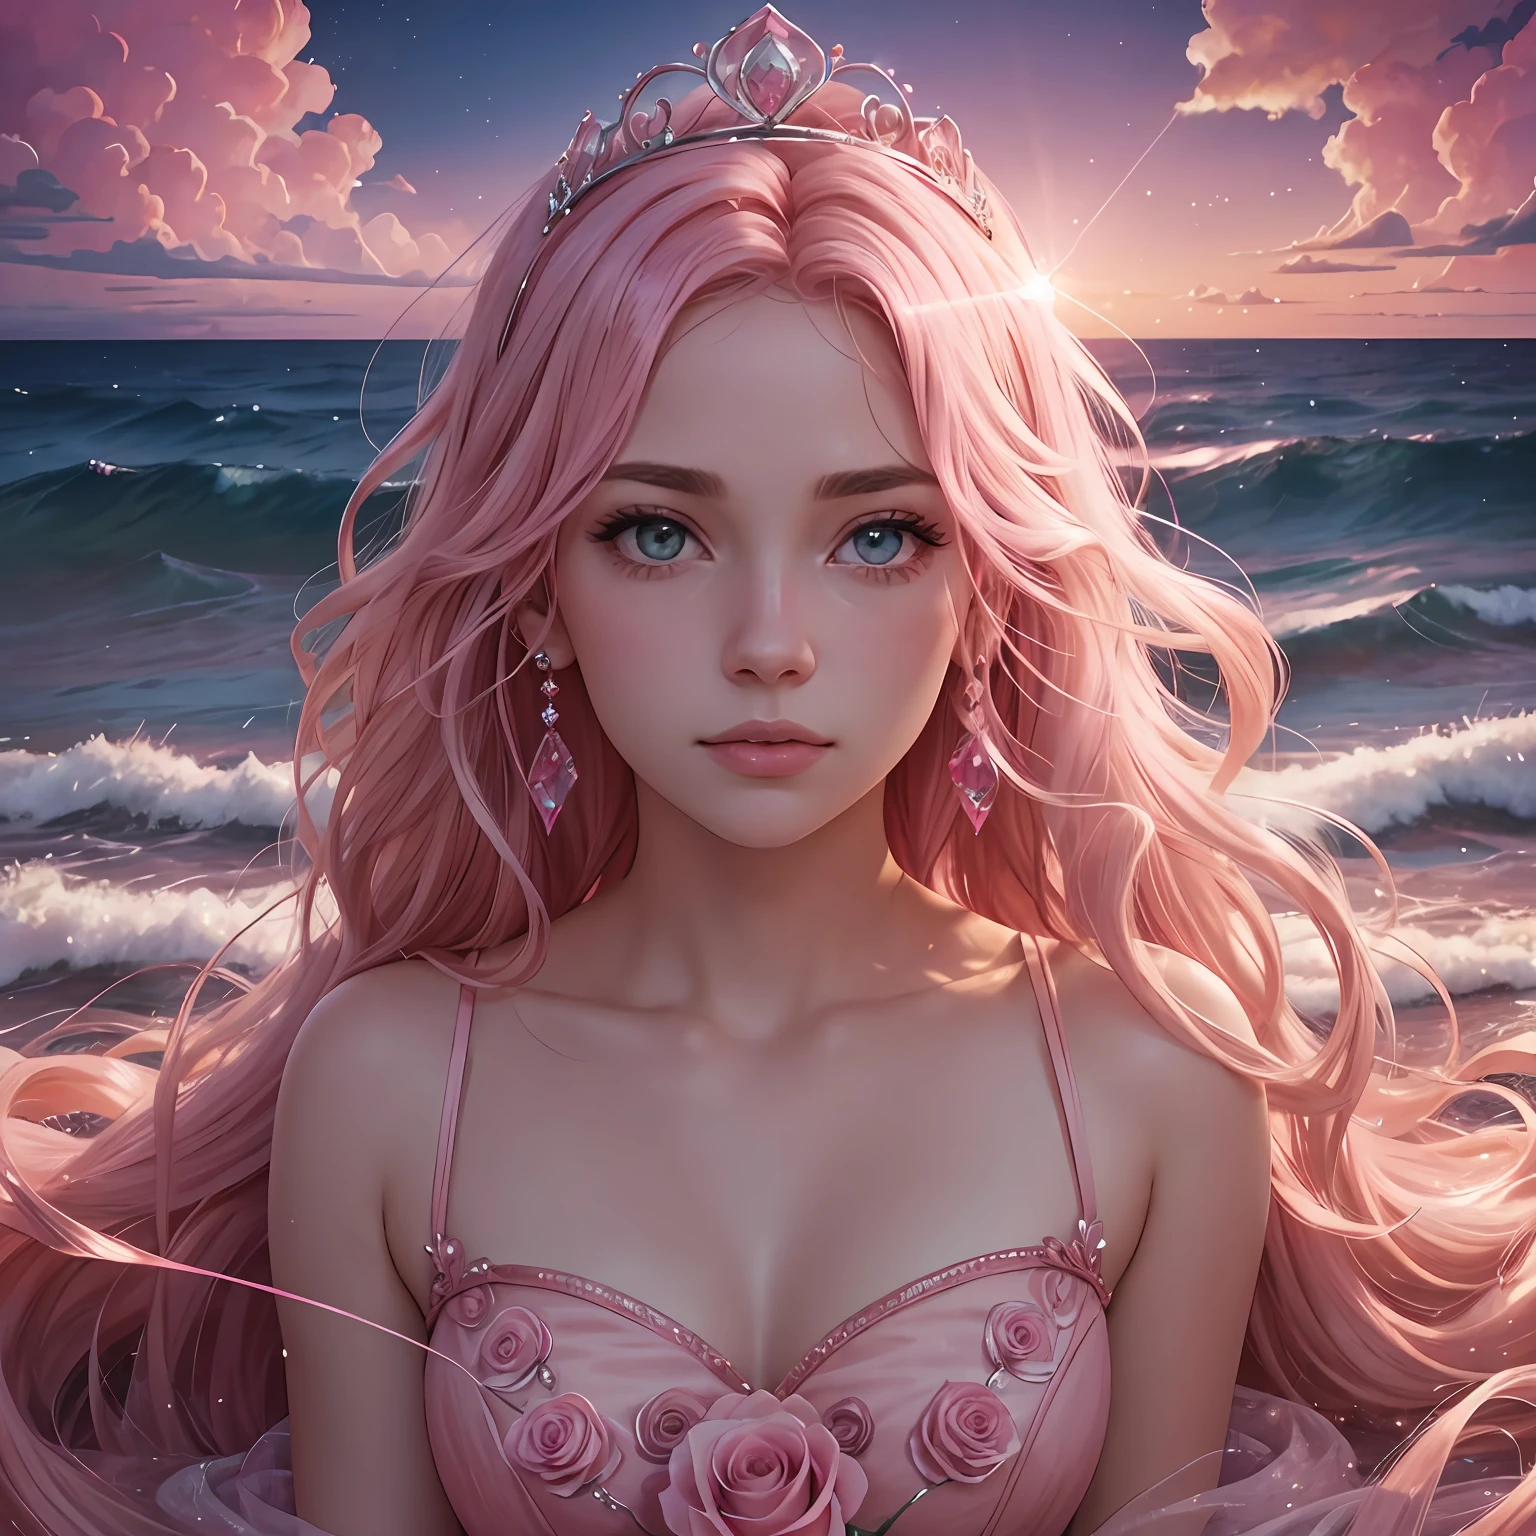 Pink moon，pink skies，Soft pink clouds，pink ocean waves 